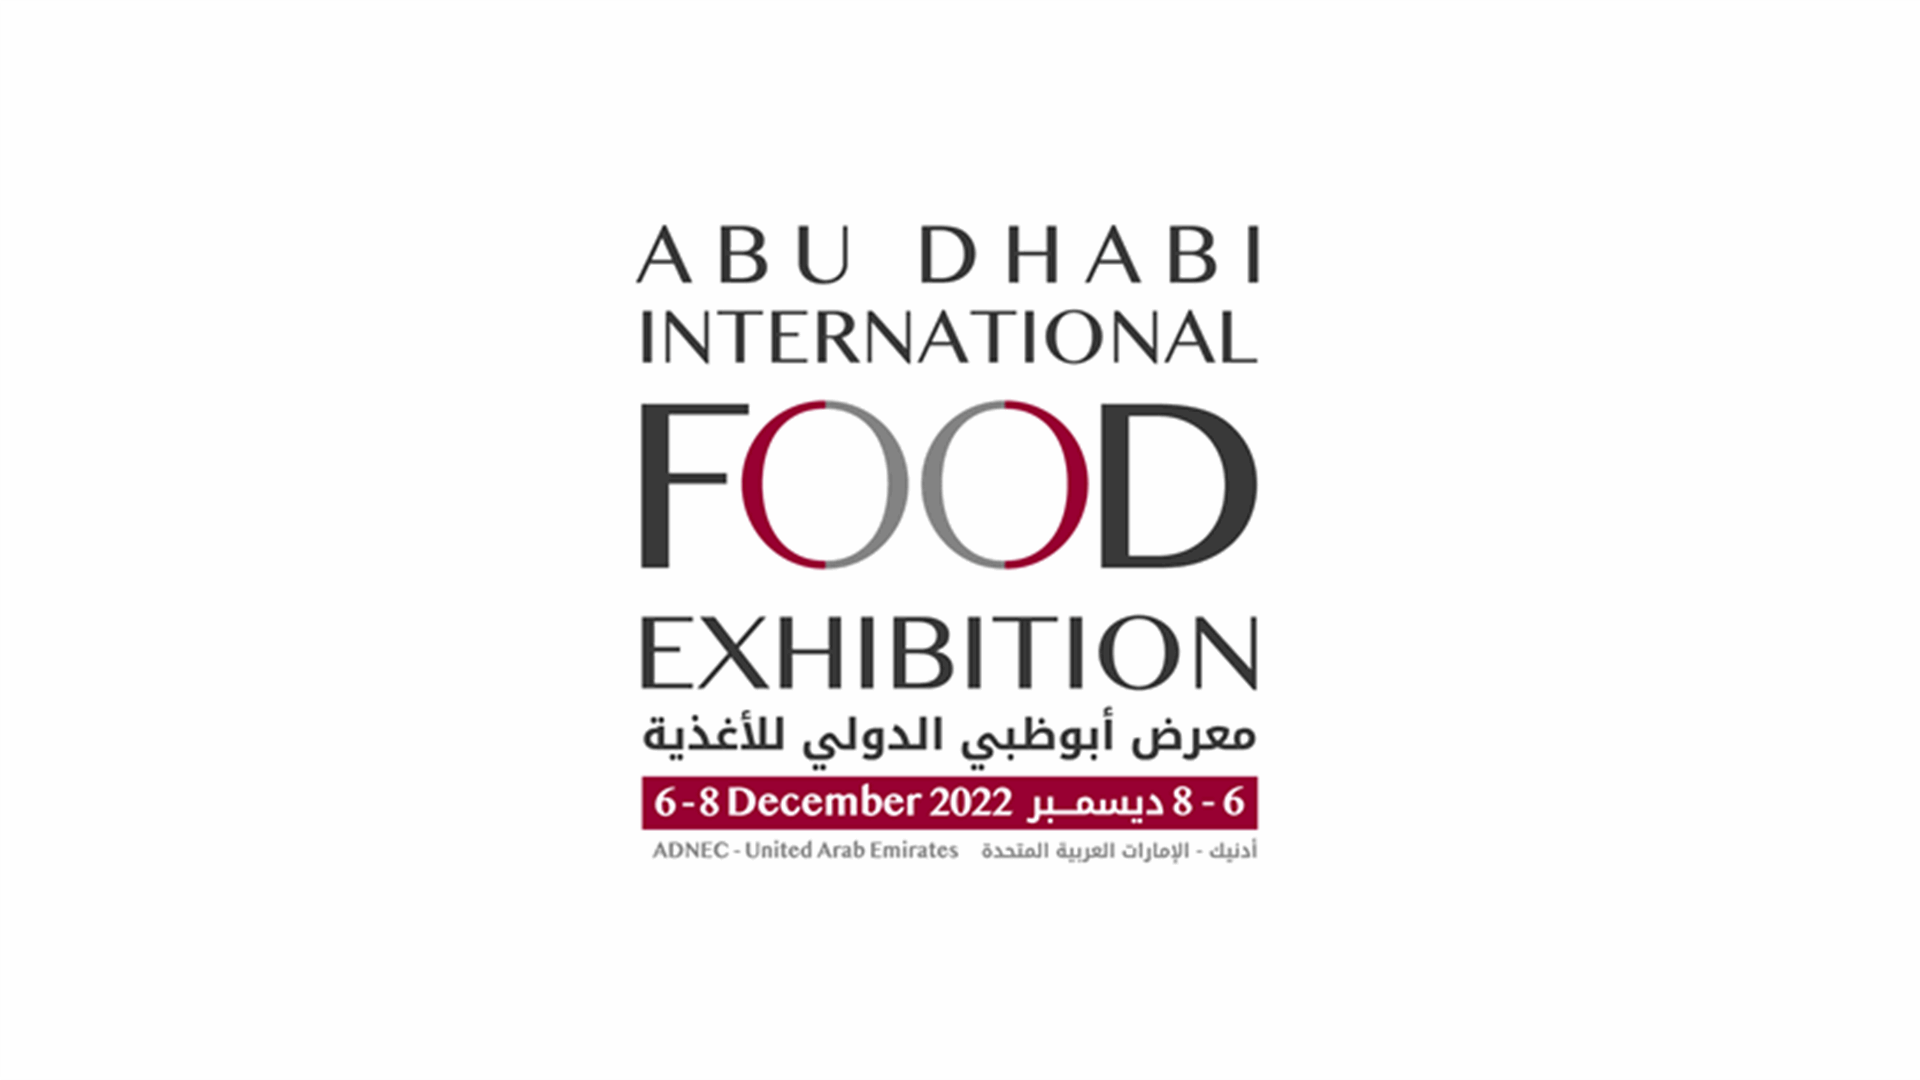 سفارة لبنان في الإمارات تدعو لزيارة الجناح اللبناني في معرض أبو ظبي الدولي للأغذية